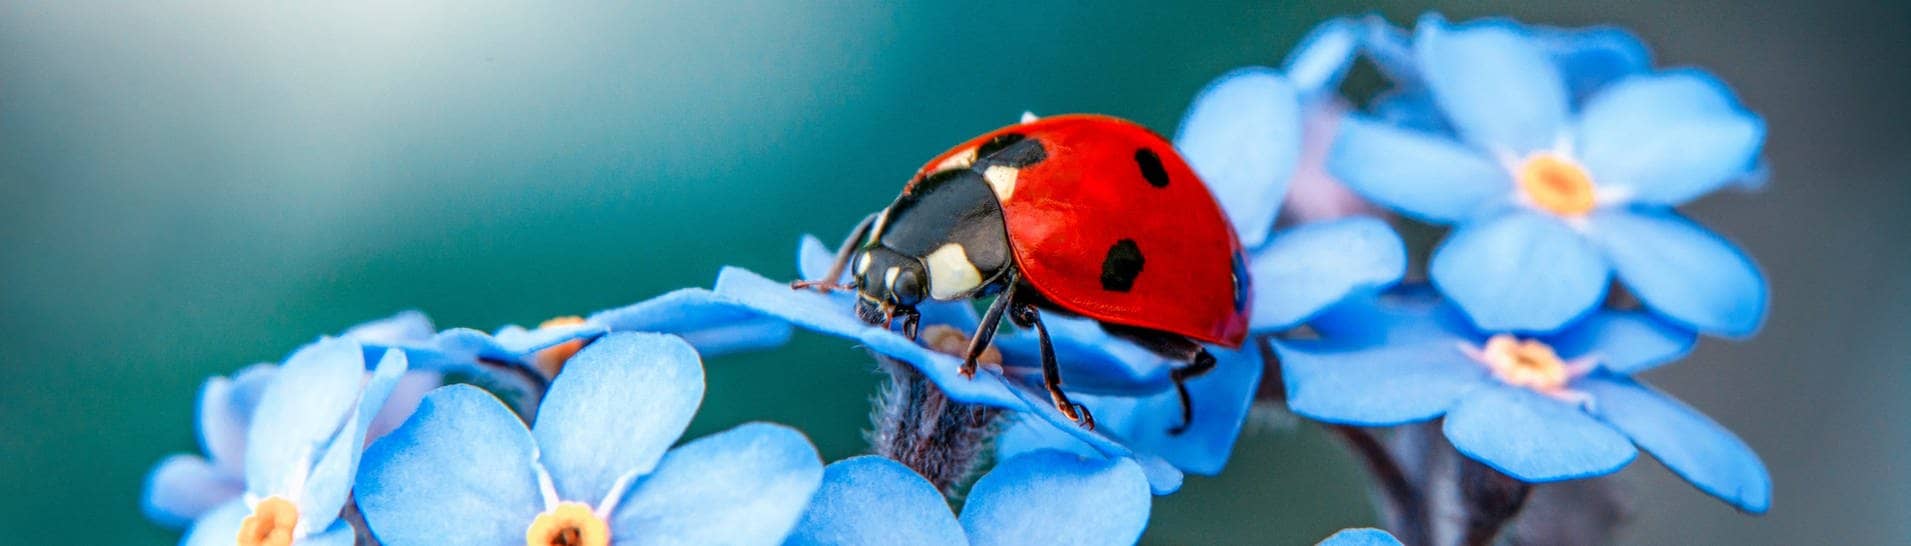 Das ist keine Stinkwanze, sondern ein Marienkäfer mit rotem Panzer und schwarzen Punkten. Er sitzt auf einer Blüte.